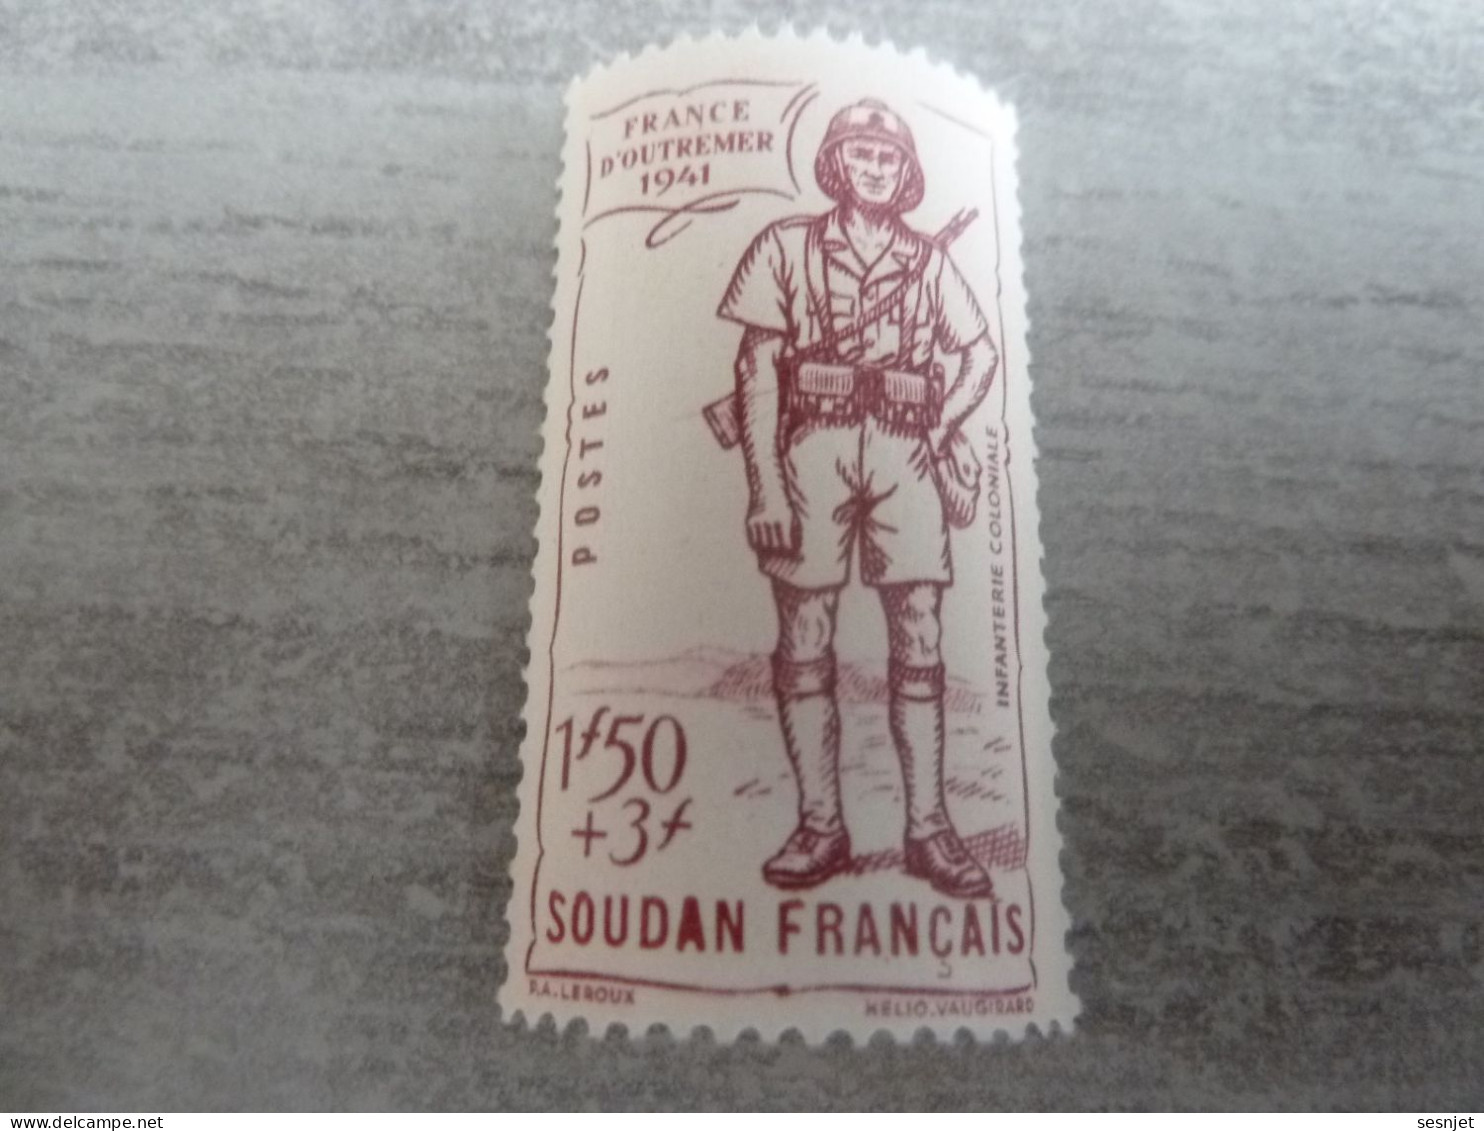 Soudan - Défense De L'Empire - Infanterie Coloniale - 1f.50+3f. - Yt 123 - Lilas - Neuf Sans Trace - Année 1941 - - Ungebraucht